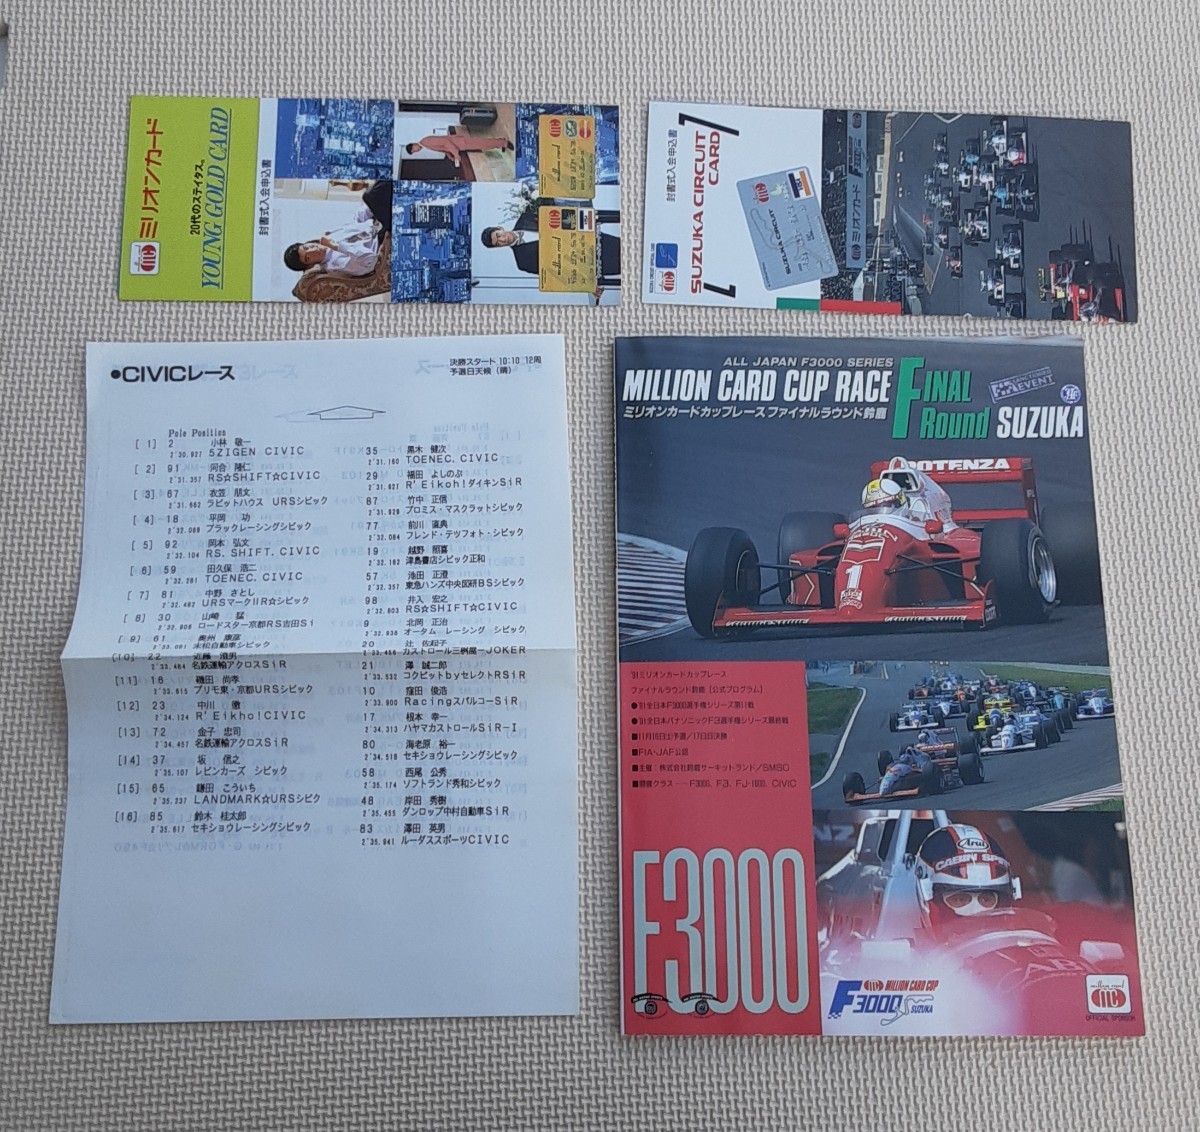 1991 ミリオンカードカップレース ファイナルラウンド鈴鹿 本 予選順位表 カード申込書 2種 まとめ売り サーキット レース コレクション_画像1